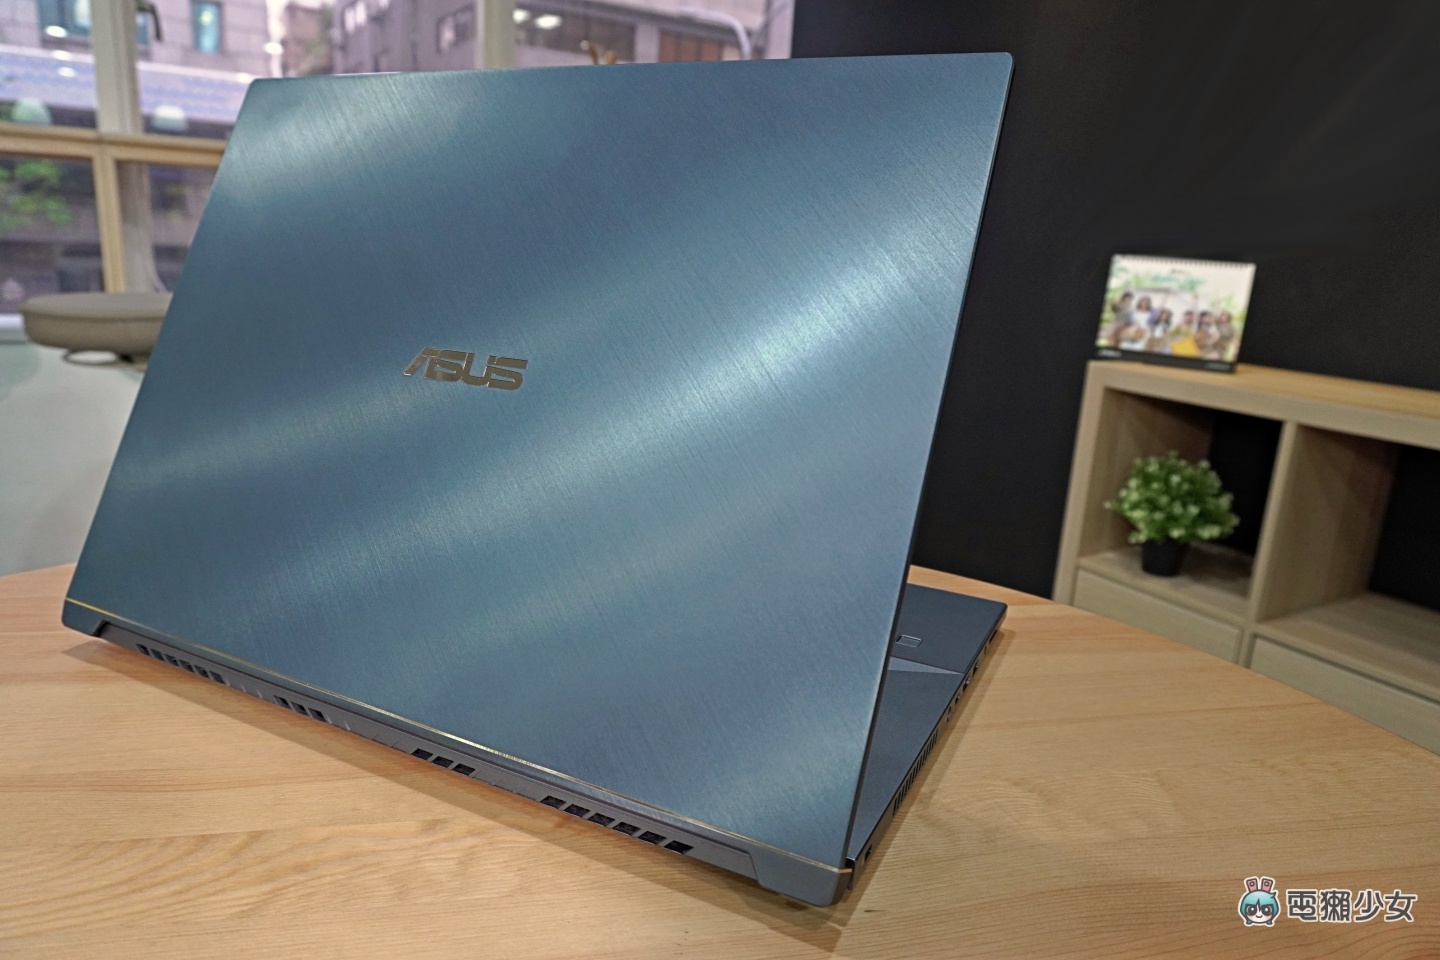 開箱｜華碩『 ASUS ProArt StudioBook Pro 17 (W700) 』，製作 3D 動畫高效又穩定，創作者在意的點全包了！